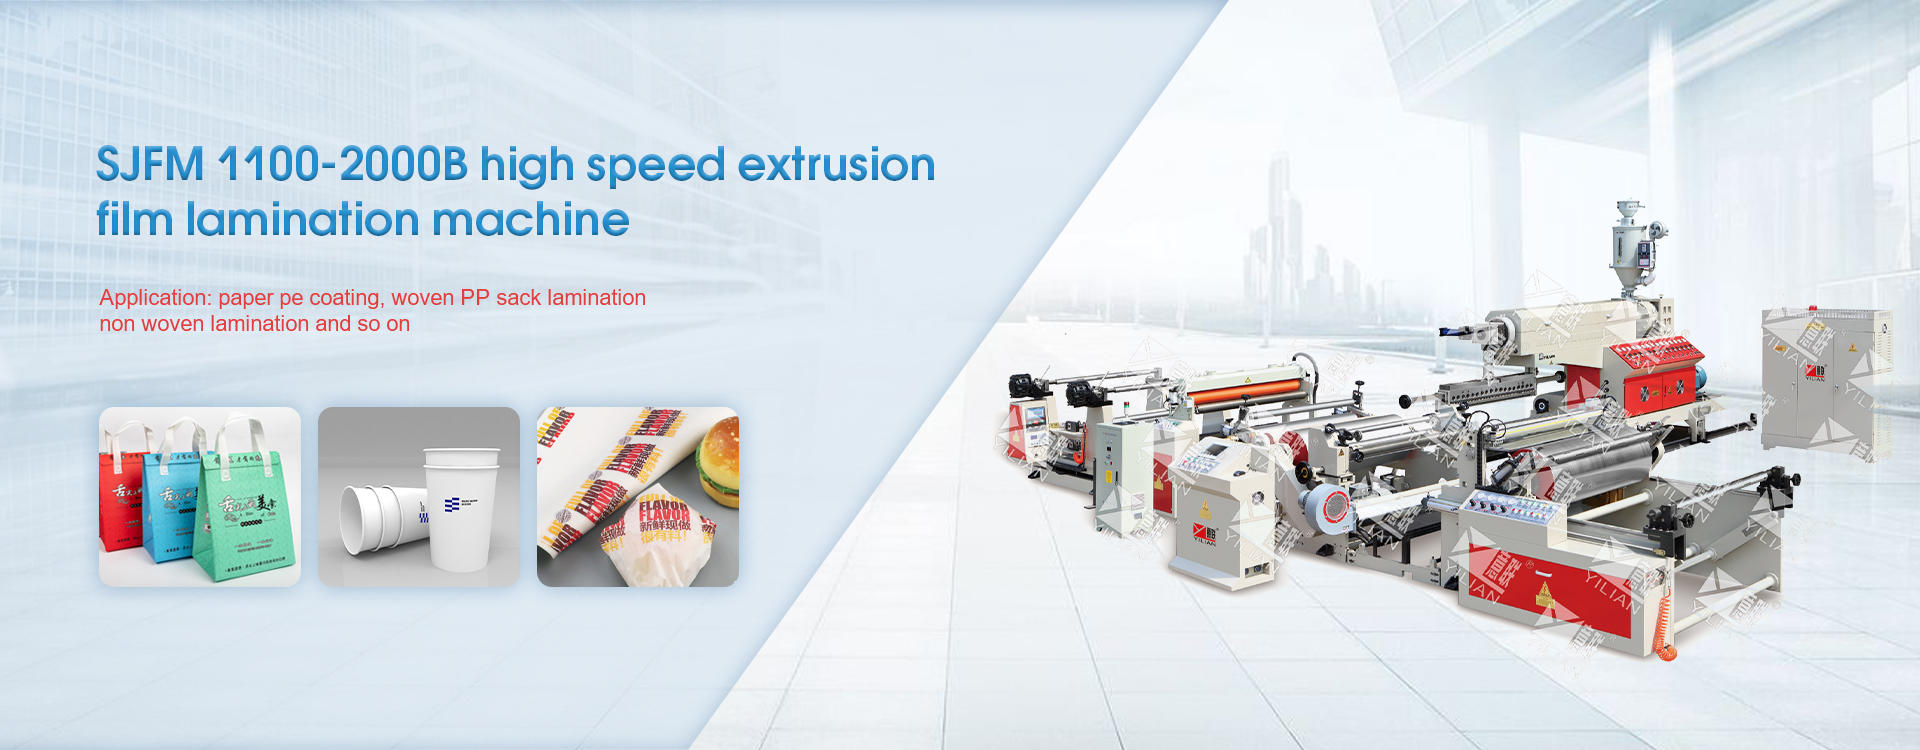 SJFM 1100-2000B high speed extrusion film lamination machine